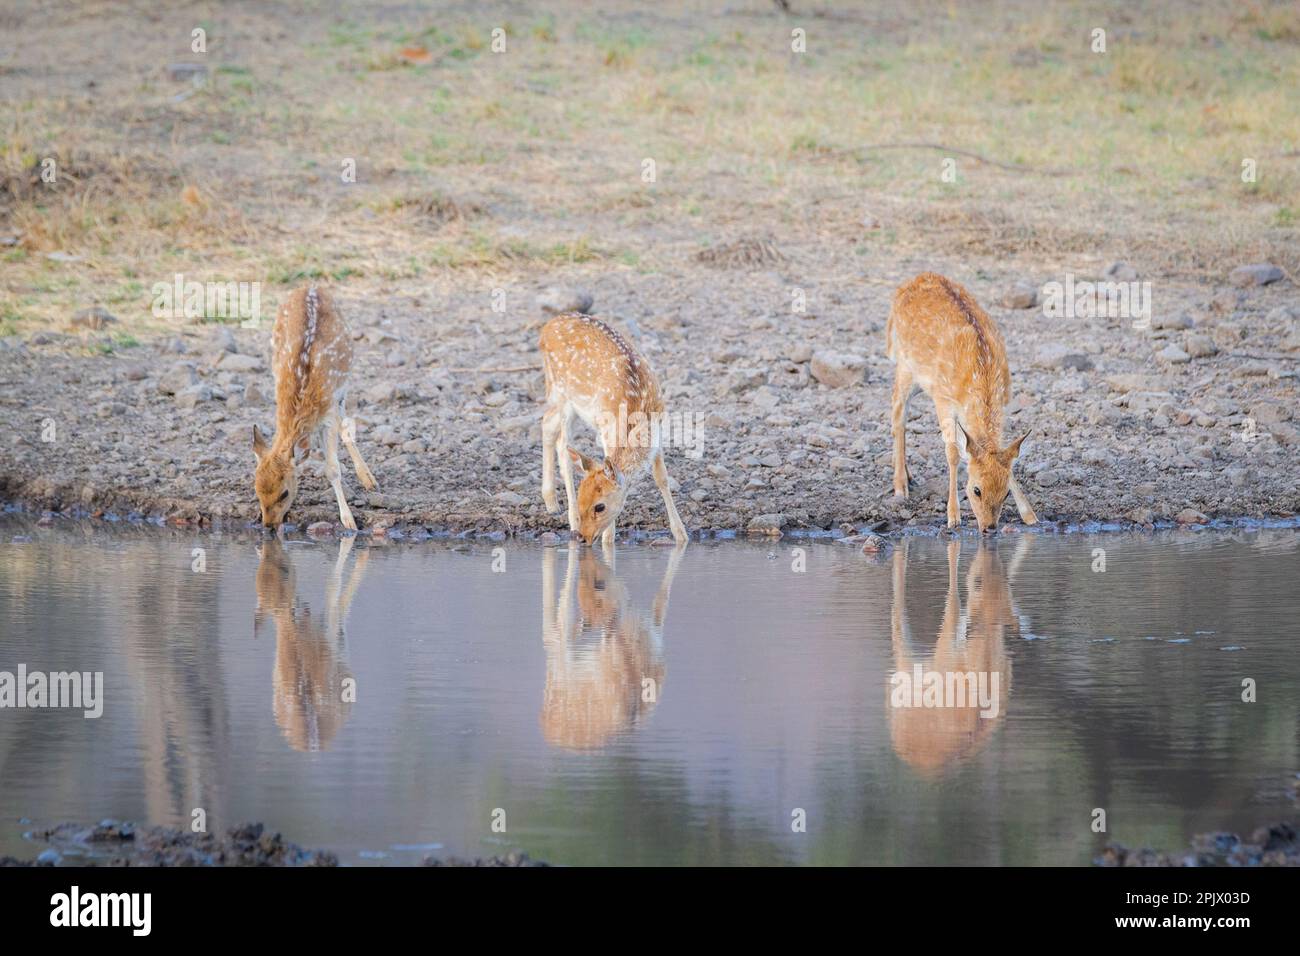 3 femelles, cerfs tachetés, boivent de l'eau en même temps depuis le lac. Beaux animaux bruns. Parc national de Ranthambore, Rajasthan, Inde Banque D'Images